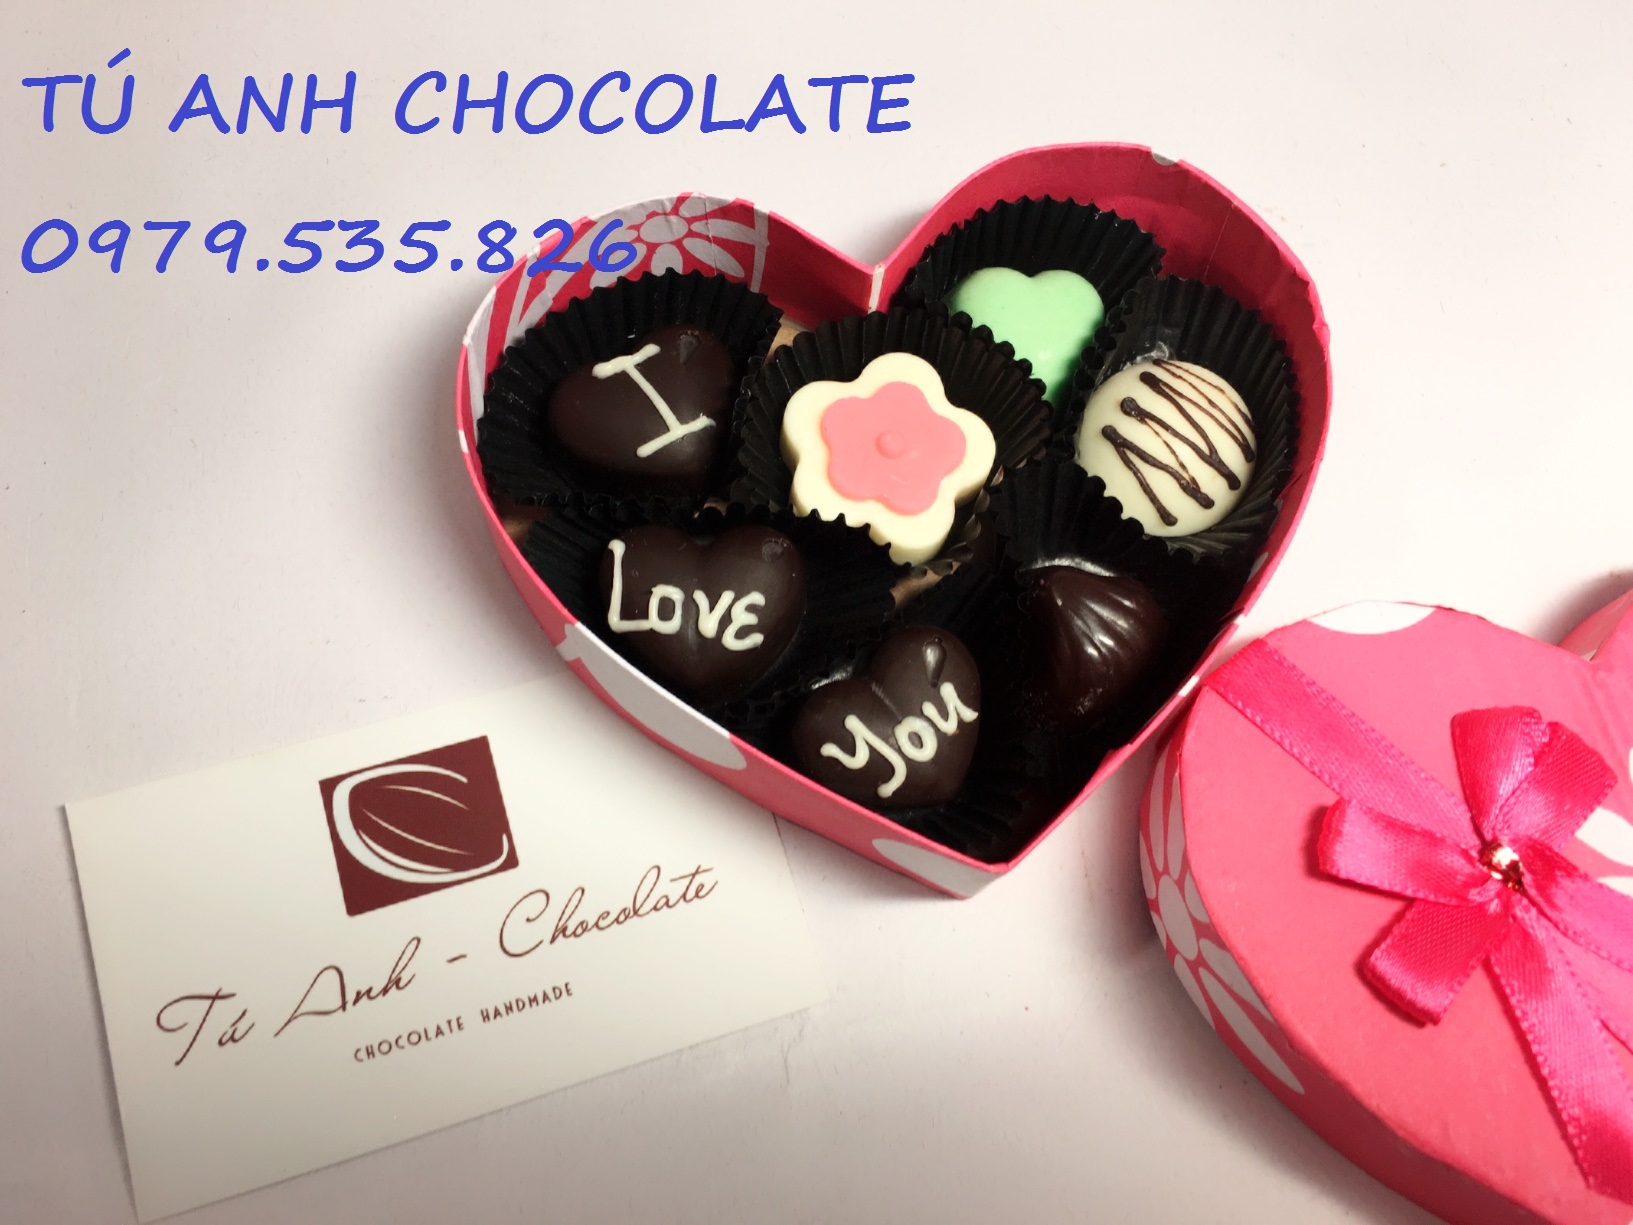 Giá sỉ chocolate valentine 2018 rẻ nhất Hà Nội.